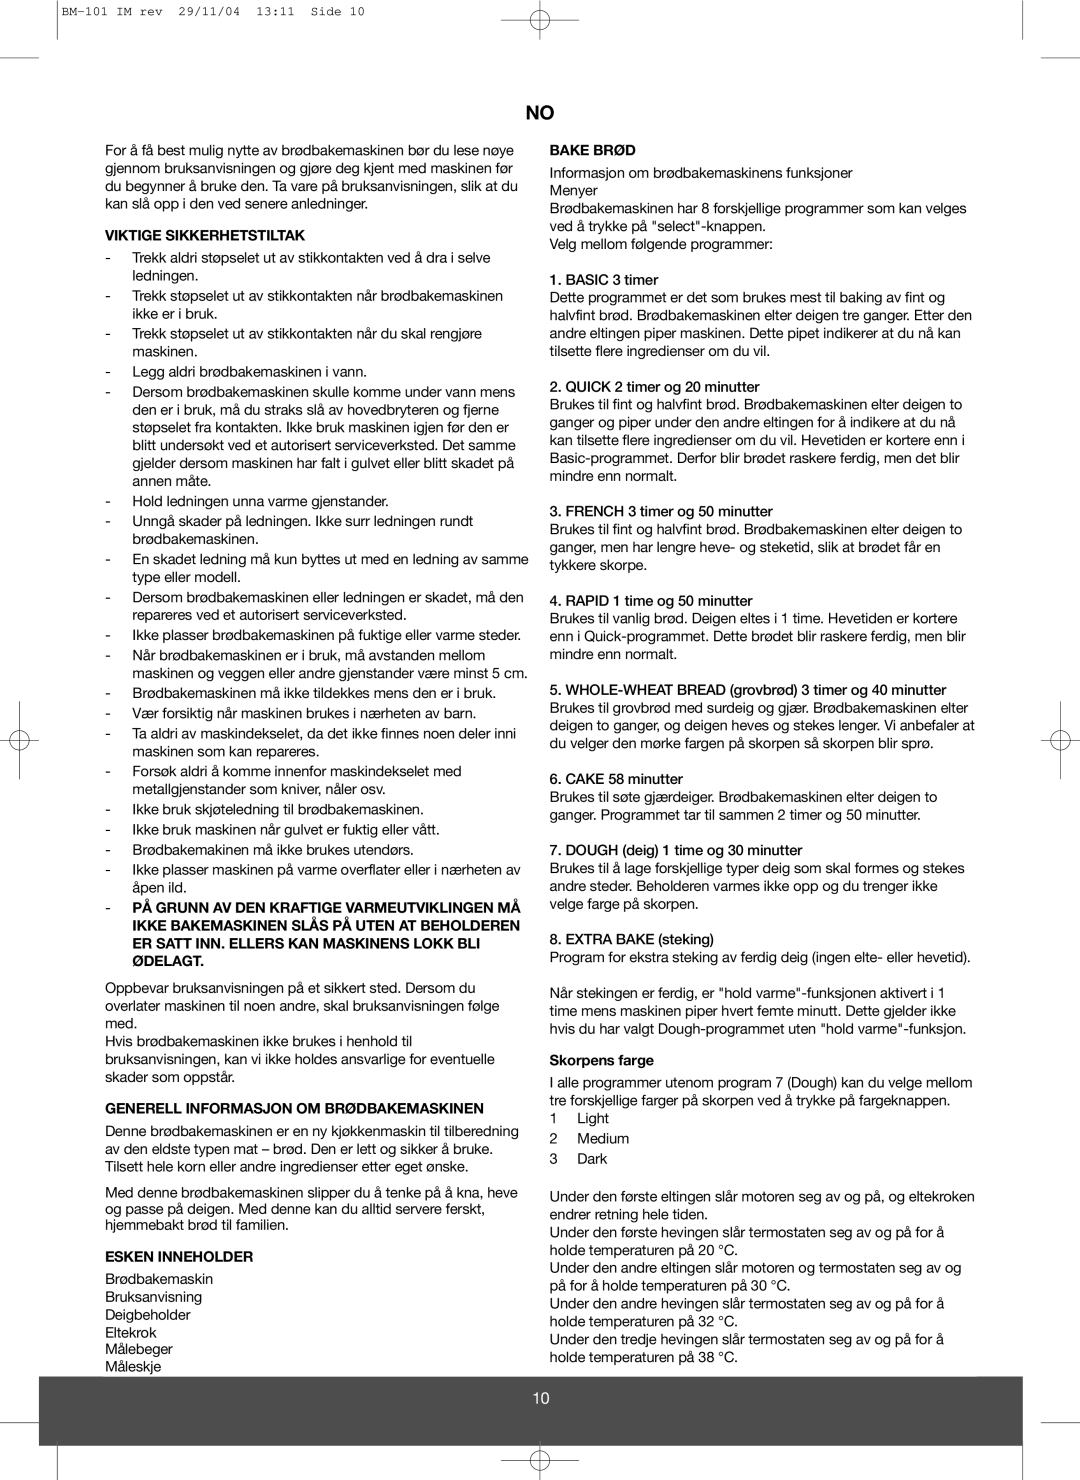 Melissa 643-032 manual Viktige Sikkerhetstiltak, Generell Informasjon Om Brødbakemaskinen, Esken Inneholder, Bake Brød 